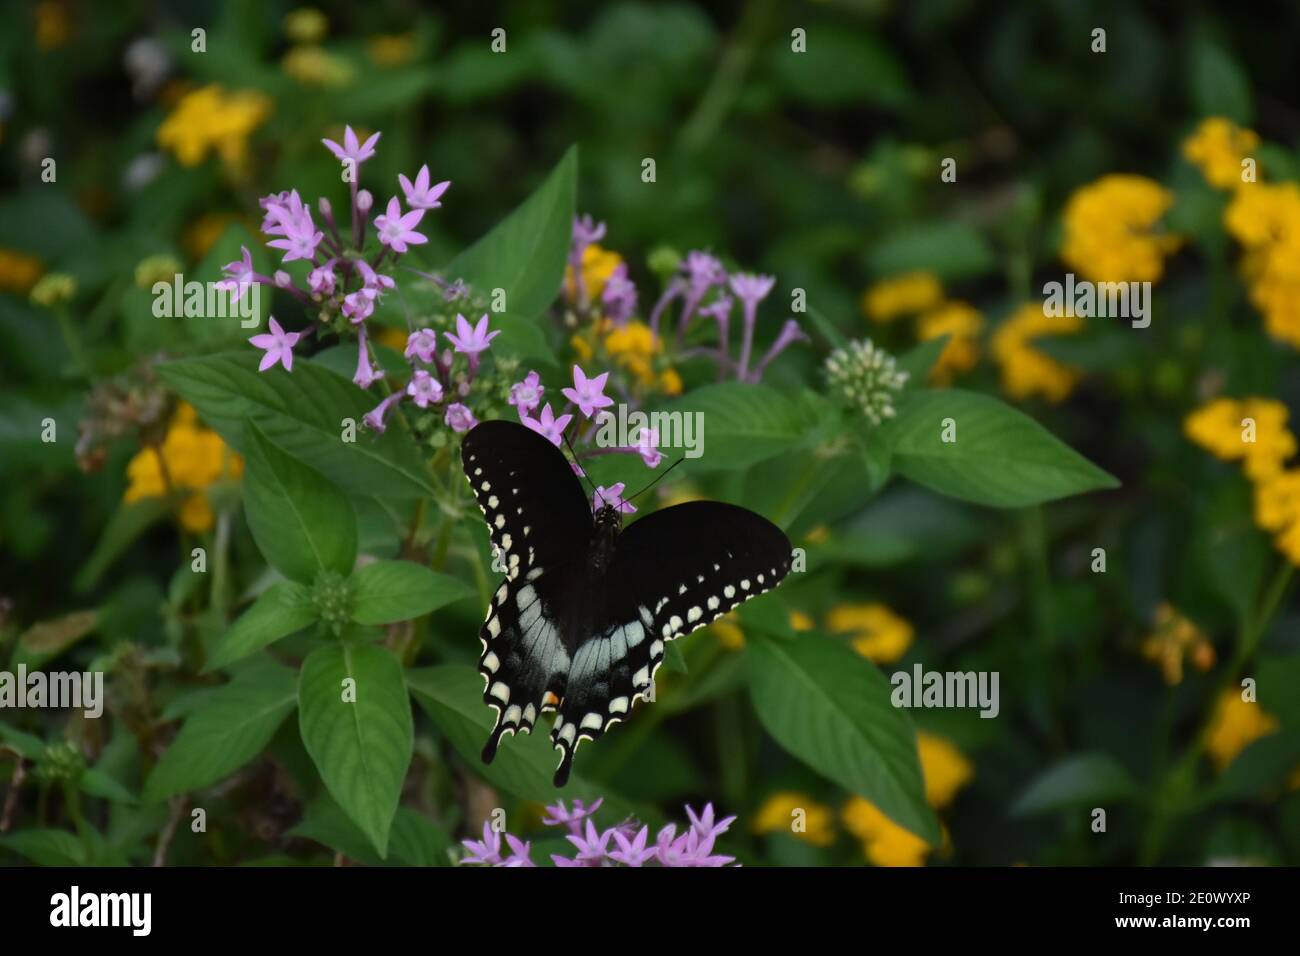 Ich habe dieses Makro-Bild eines Schmetterlings auf einer Blume oder Schmetterlinge auf einer Blume erstellt, um meine Makro-Fotografie-Fähigkeiten zu üben. Schmetterlinge sind wichtig Stockfoto